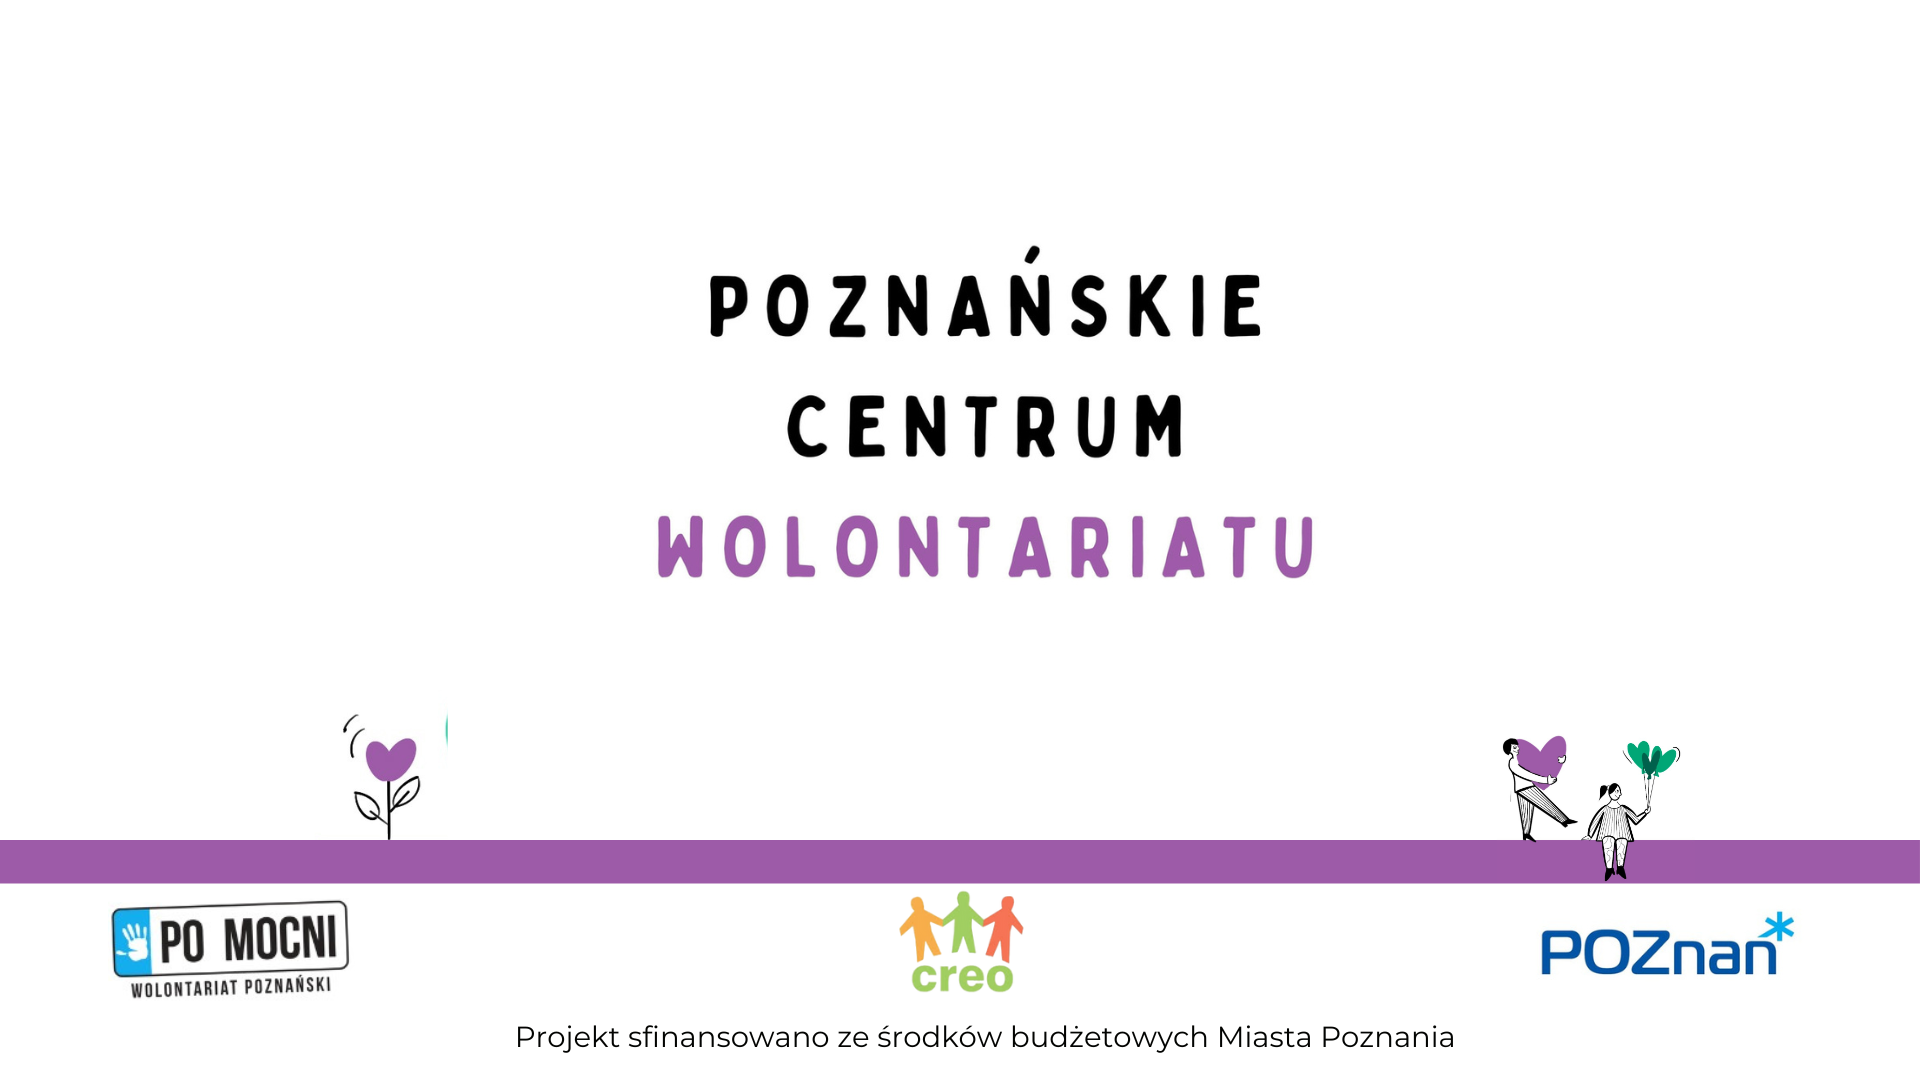 Napis o treści Poznańskie Centrum Wolontariatu, fioletowa linia na której siedzą narysowane postaci, poniżej trzy logotypy.